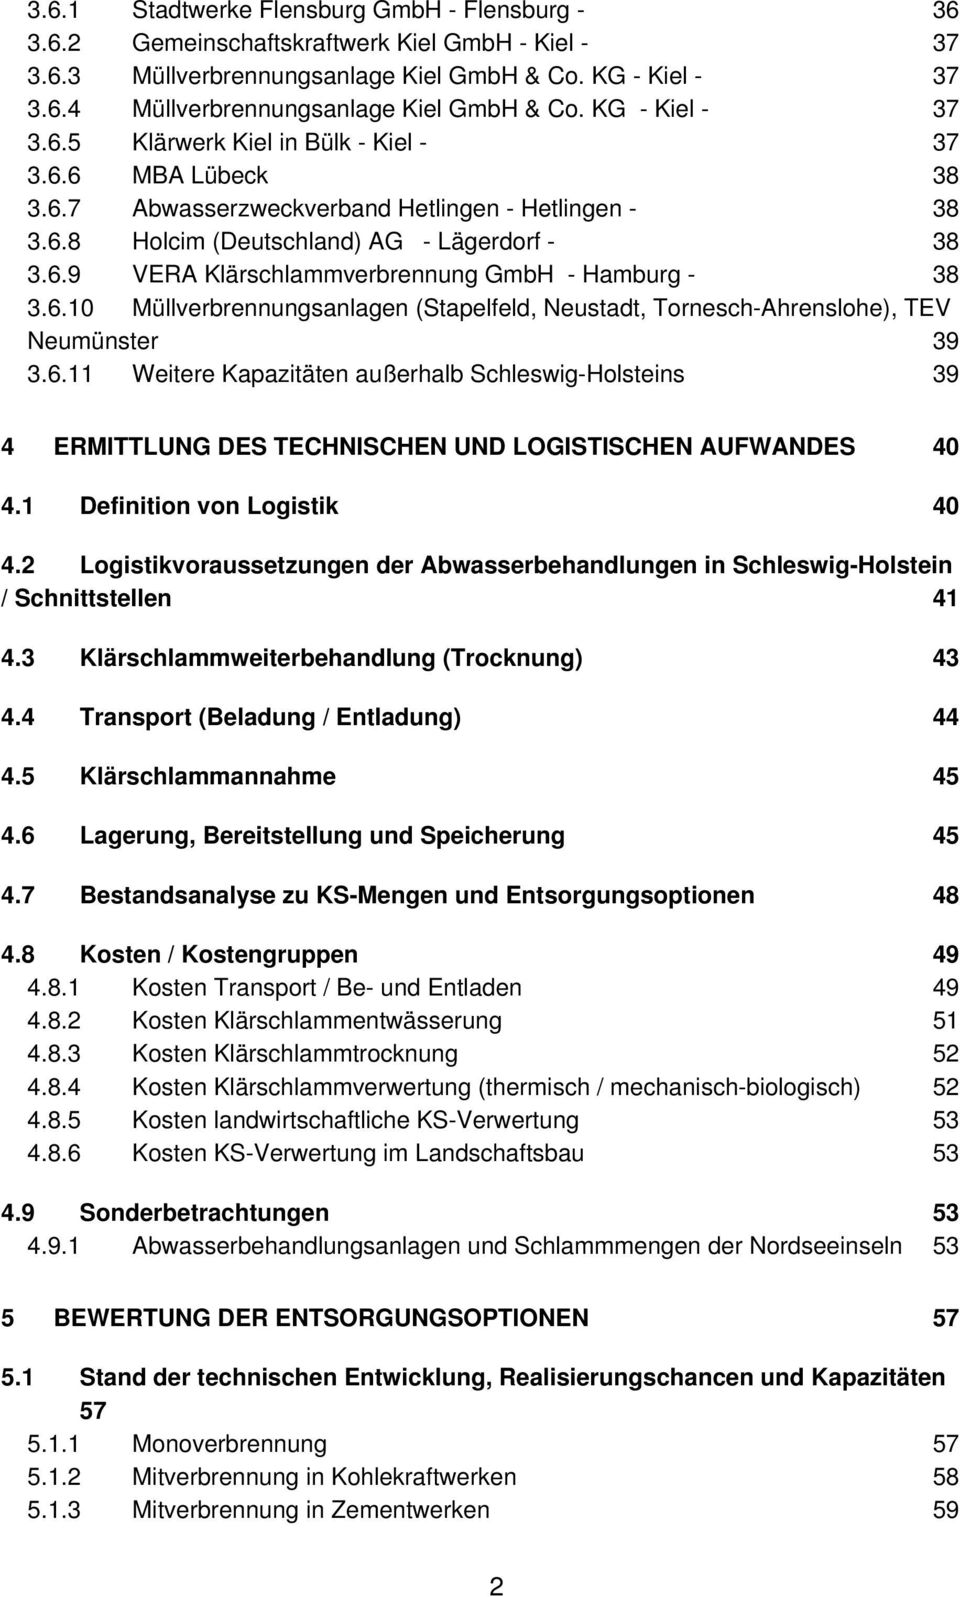 6.10 Müllverbrennungsanlagen (Stapelfeld, Neustadt, Tornesch-Ahrenslohe), TEV Neumünster 39 3.6.11 Weitere Kapazitäten außerhalb Schleswig-Holsteins 39 4 ERMITTLUNG DES TECHNISCHEN UND LOGISTISCHEN AUFWANDES 40 4.